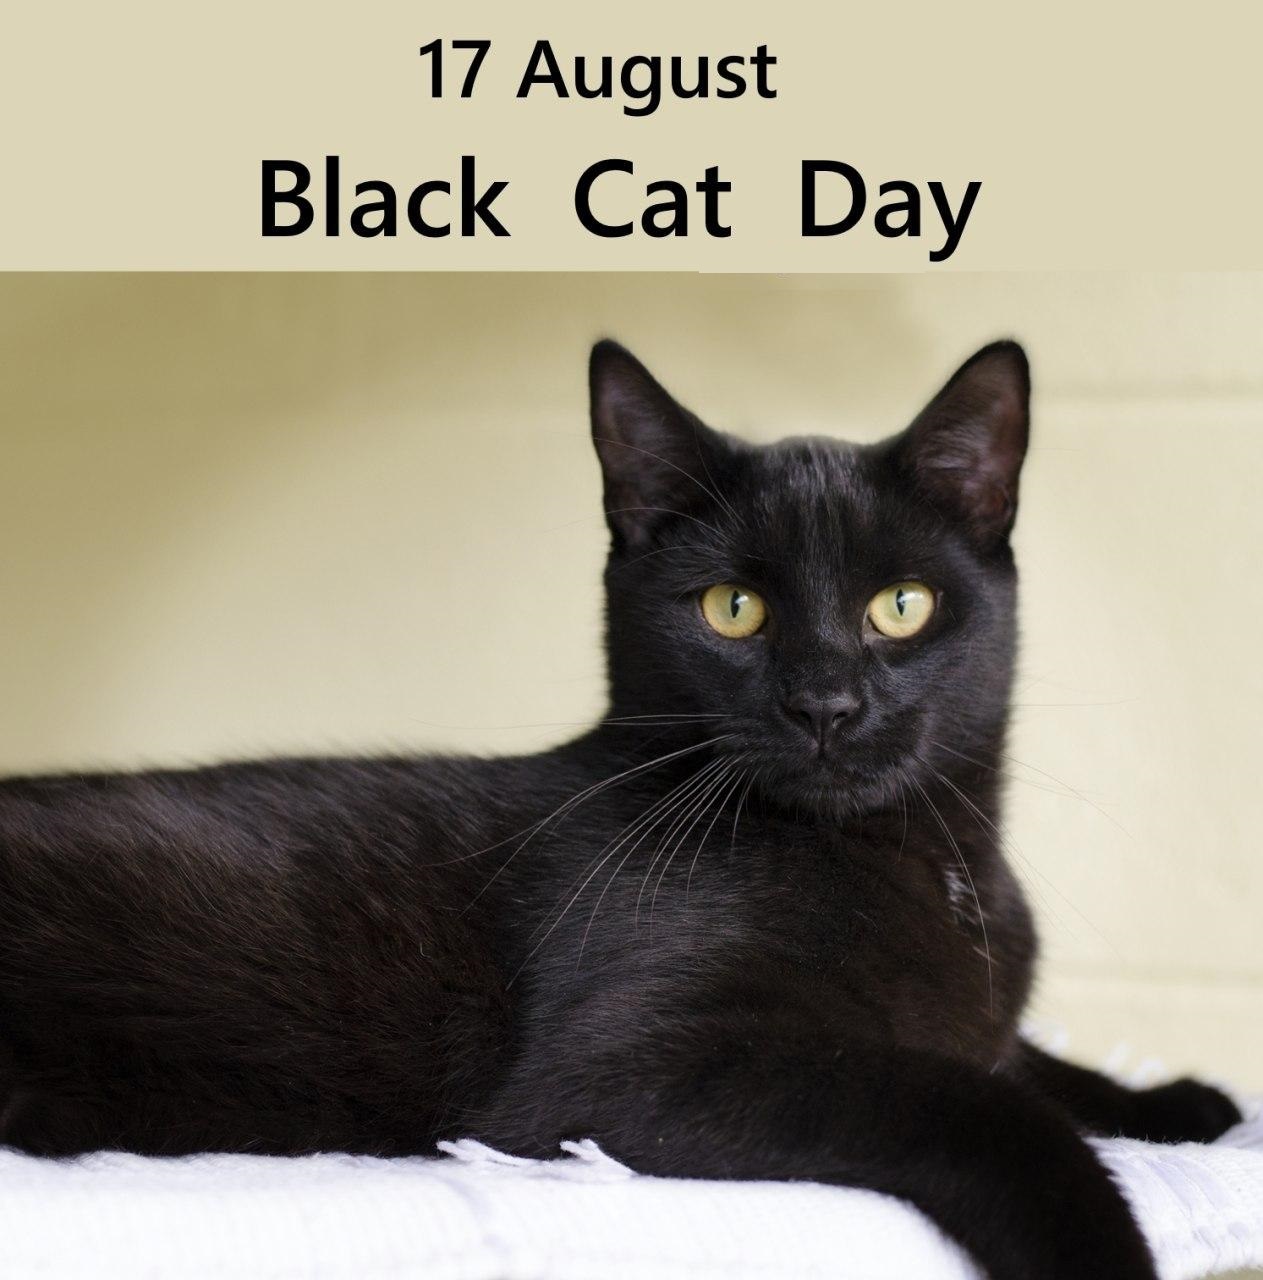 ۱۷ اوت  روز گربه سیاه است.